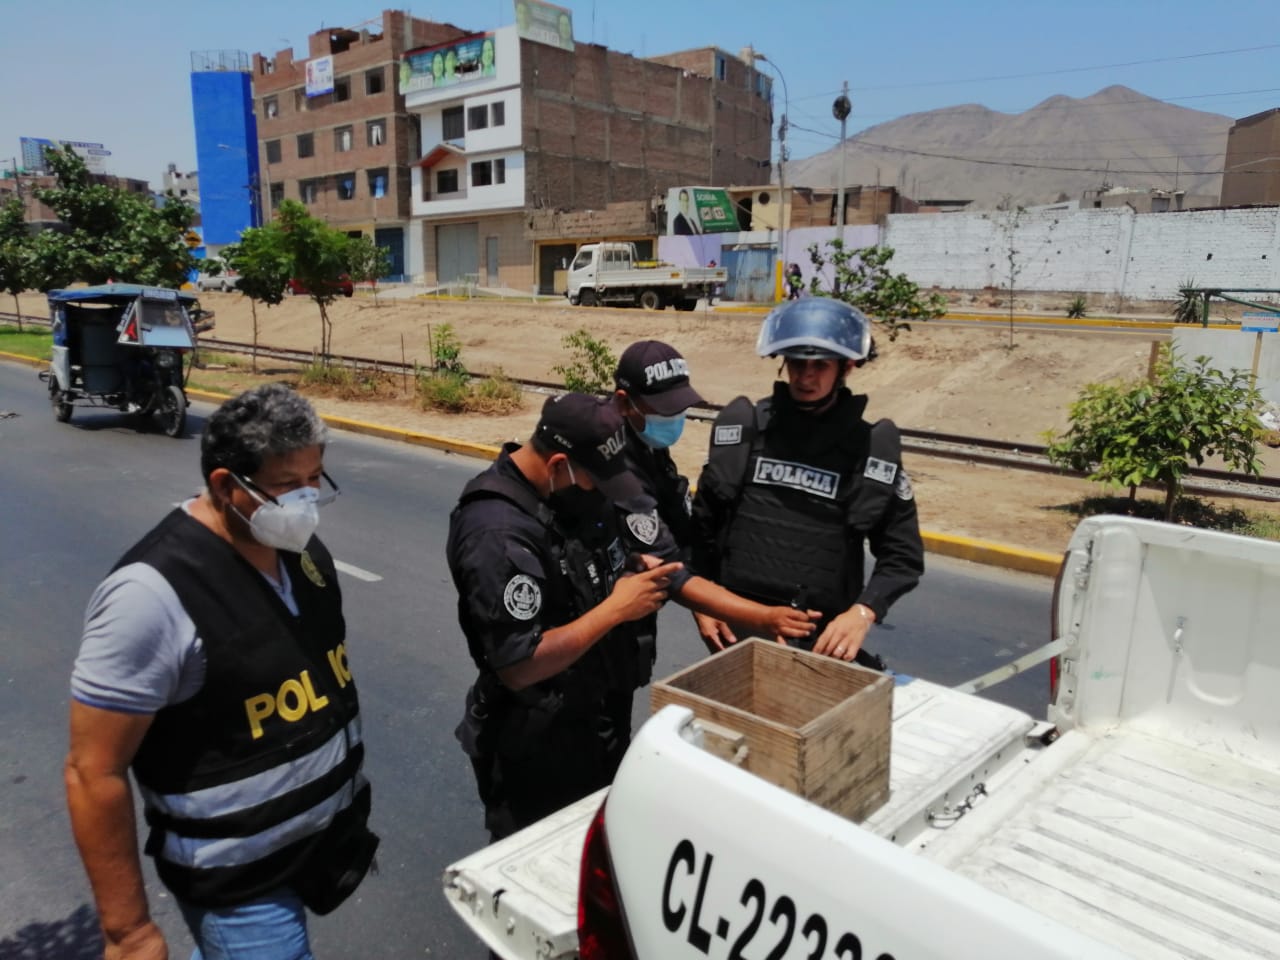 À Lima, des spécialistes en explosifs ont saisi deux grenades non explosées sur une place publique grâce à une piste transmise durant l’opération.